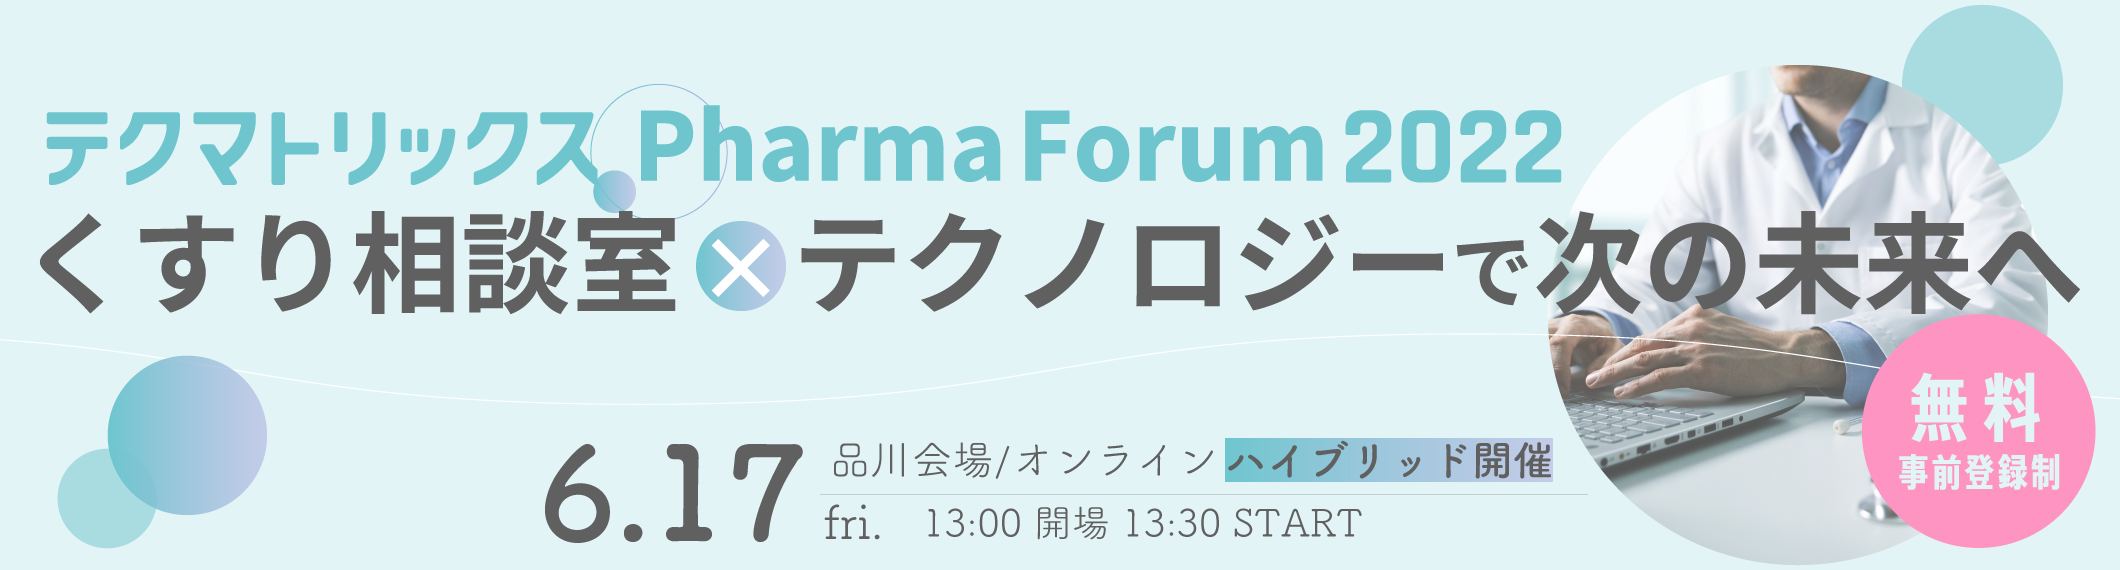 【6/17開催】製薬企業関係者向けイベント「テクマトリックス Pharma Forum 2022」を開催します！